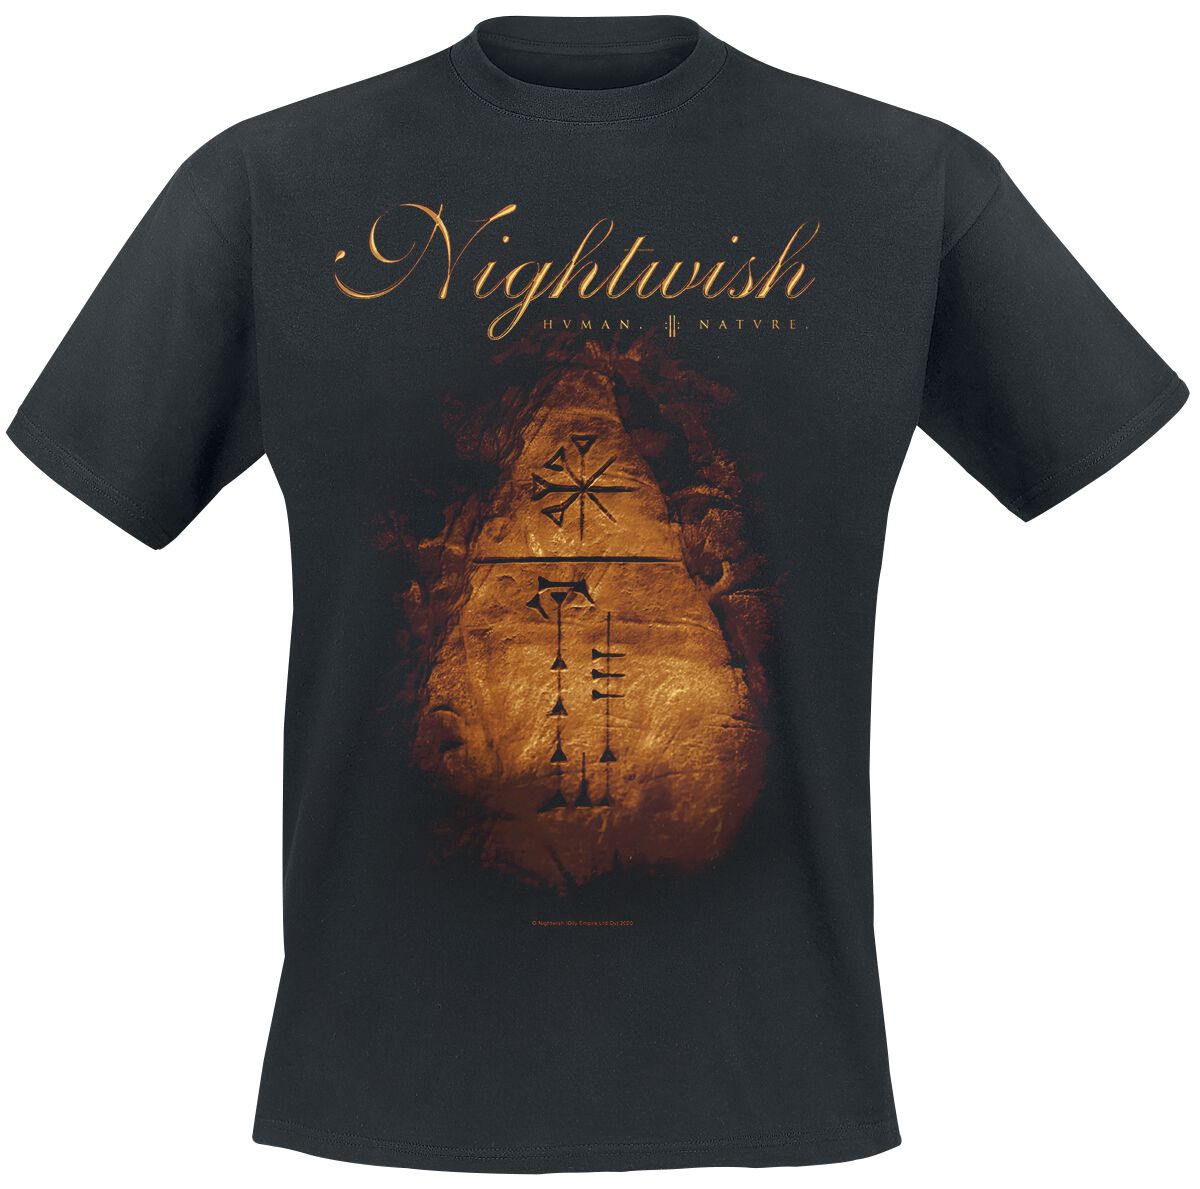 Nightwish T-Shirt - Human. :||: Nature. - S bis XXL - für Männer - Größe XXL - schwarz  - EMP exklusives Merchandise!